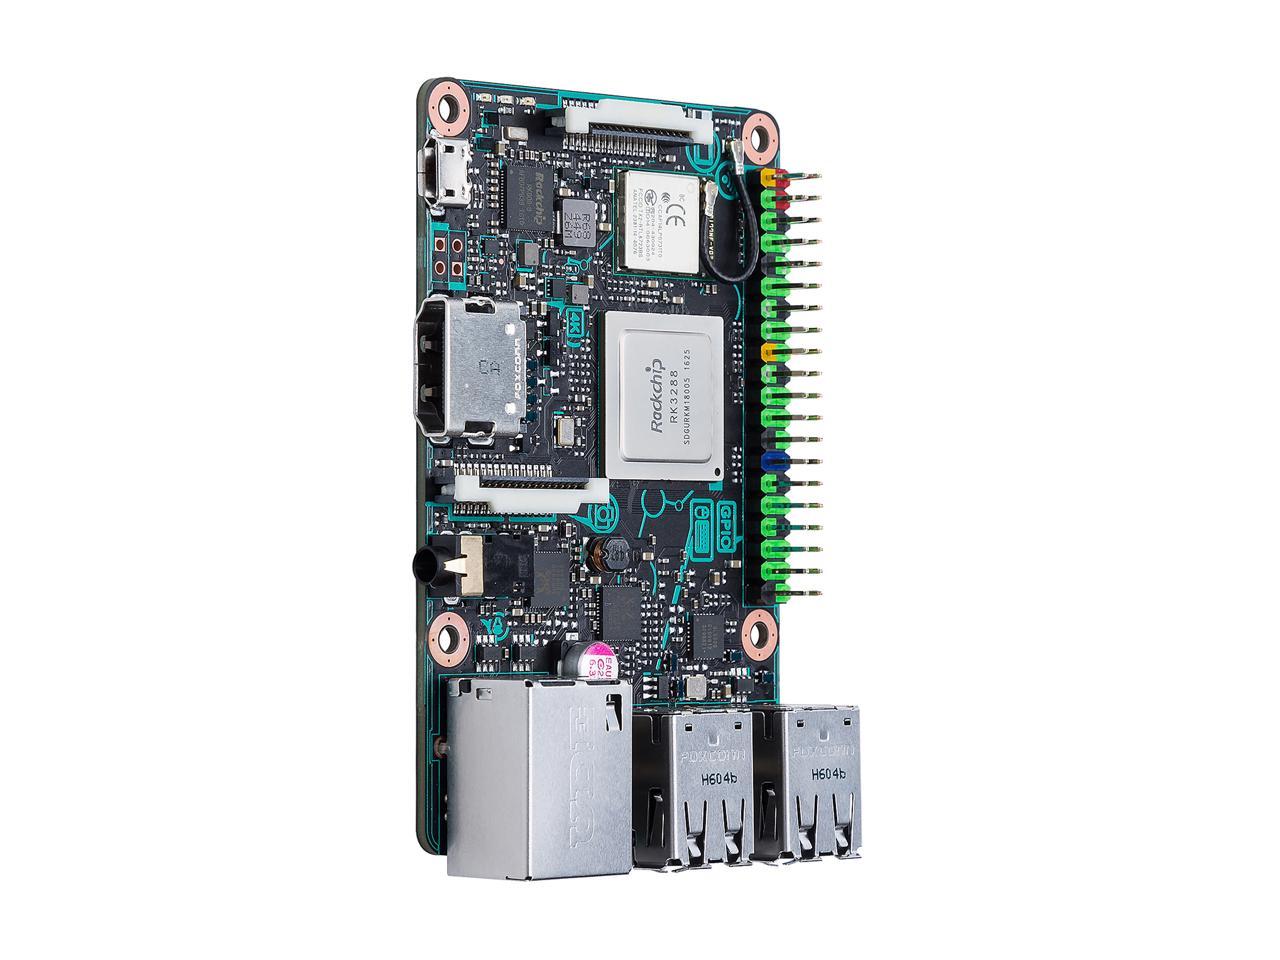 ASUS SBC Tinker Board RK3288 SoC 1.8 GHz Quad-Core CPU, 600 MHz Mali-T764 GPU, 2GB